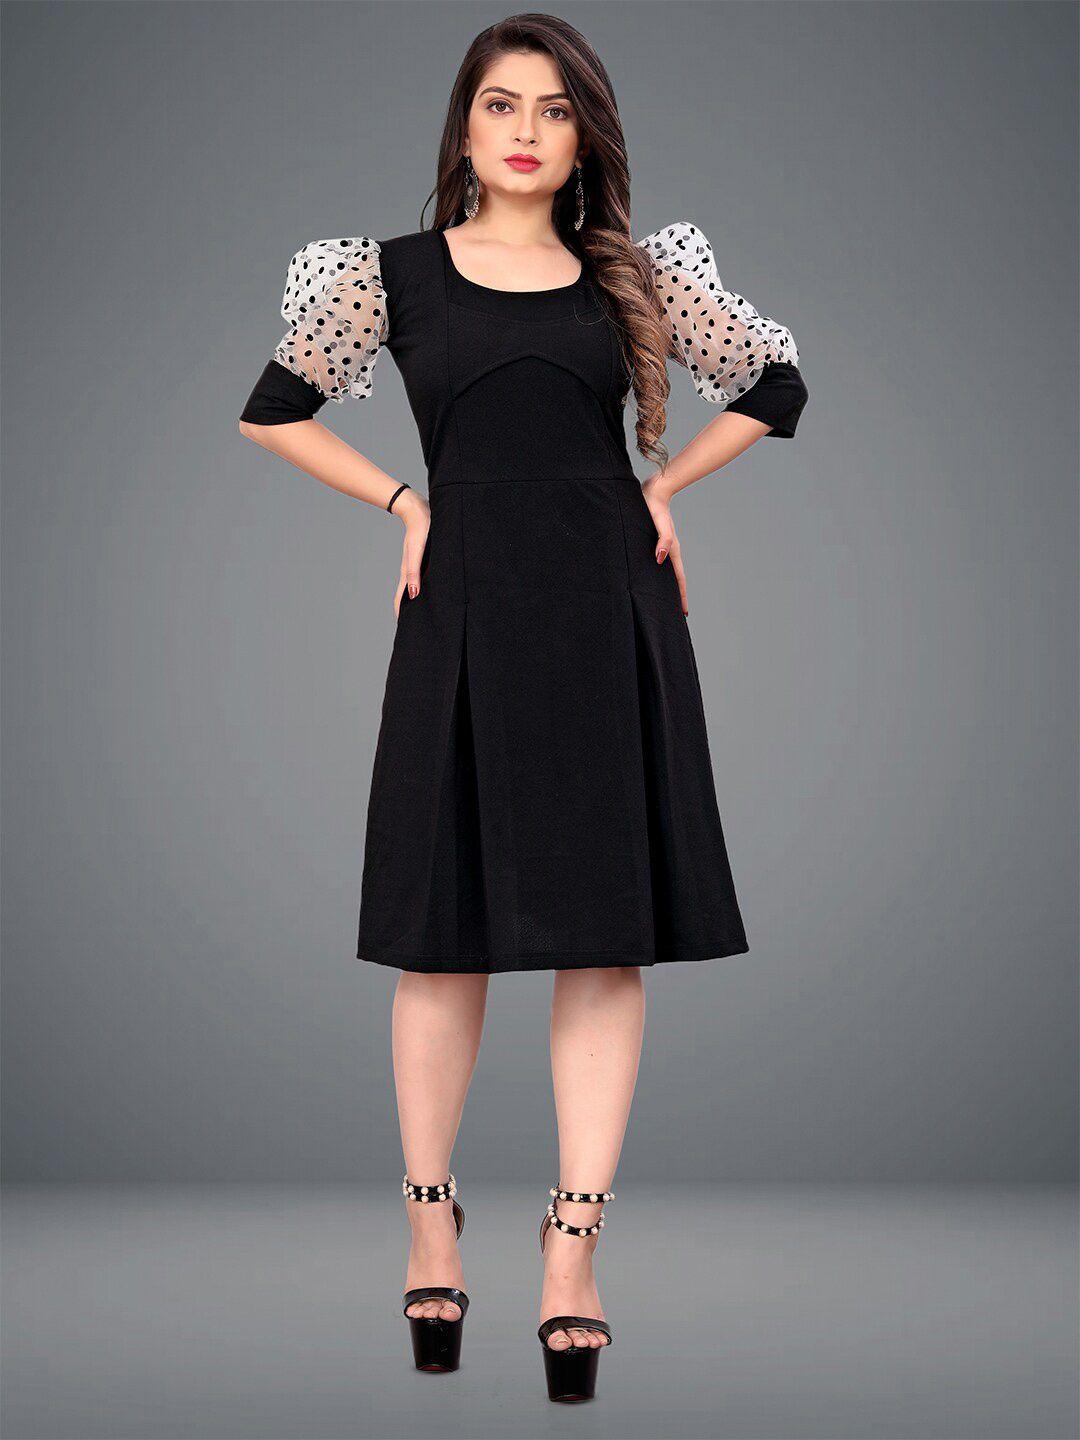 deklook black puff sleeve fit & flare dress